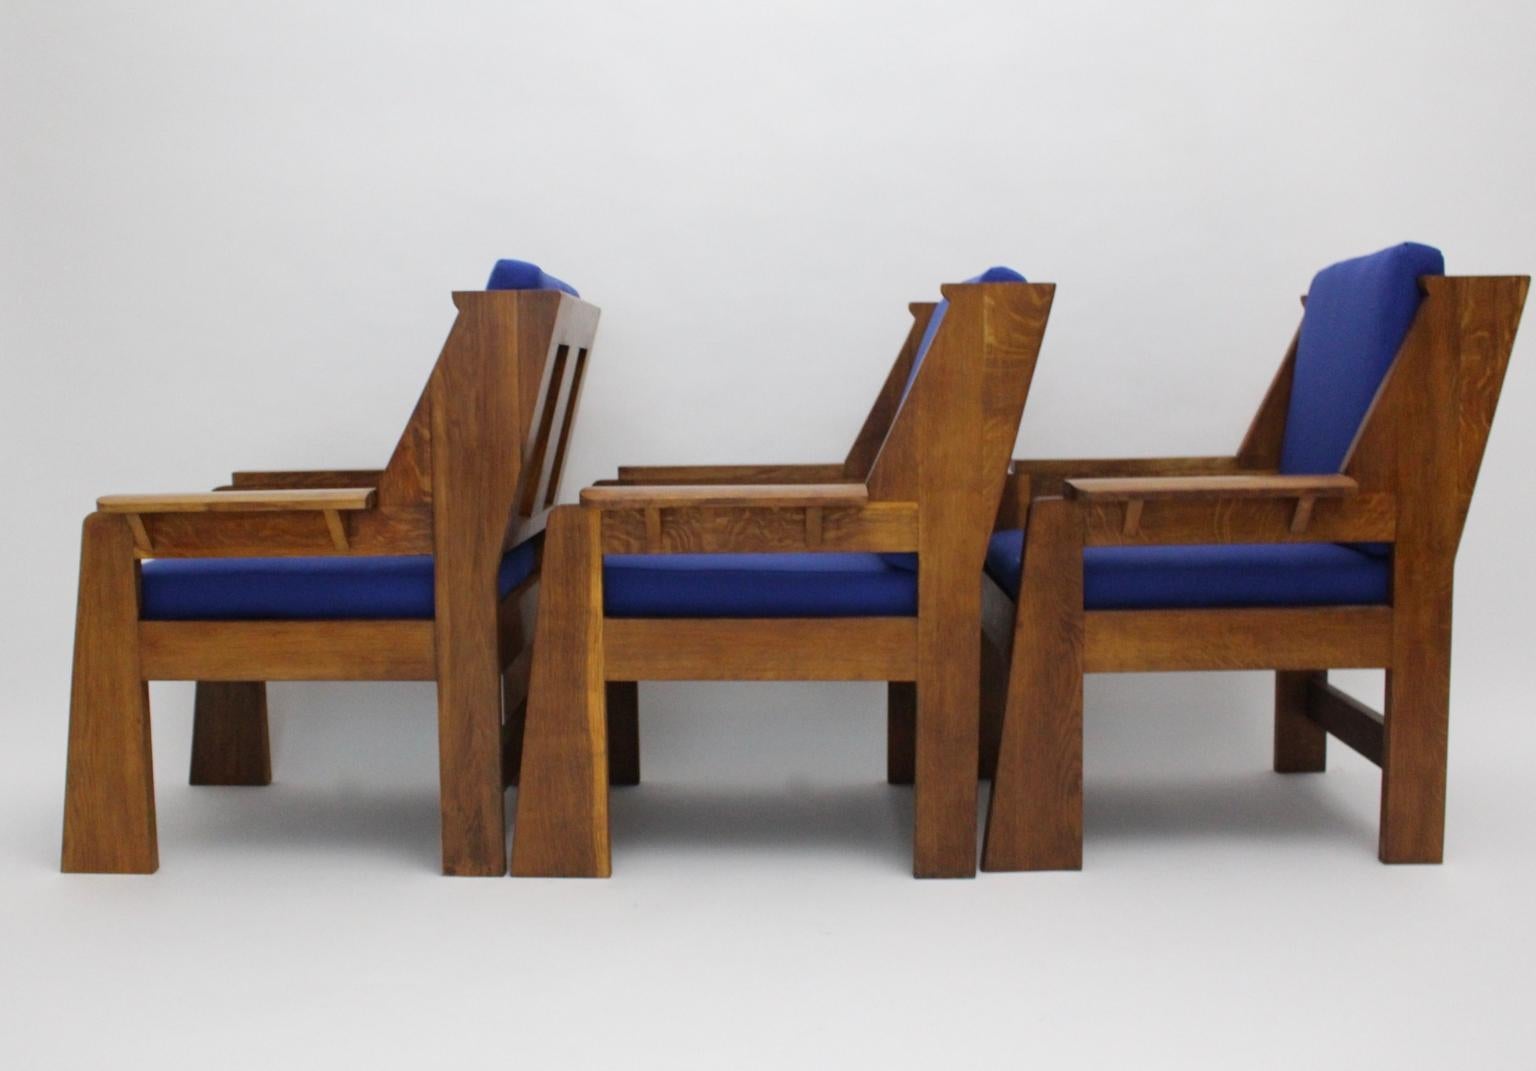 Art Deco Tschechische Kubismus Eiche Blau Stoff Vintage Sessel oder Lounge Stühle aus massivem Eichenholz 1920er Jahre, Tschechische Republik.
Zusätzlich sind die losen, erneuerten Sitz- und Rückenkissen mit einem kräftigen kobaltblauen Textilgewebe